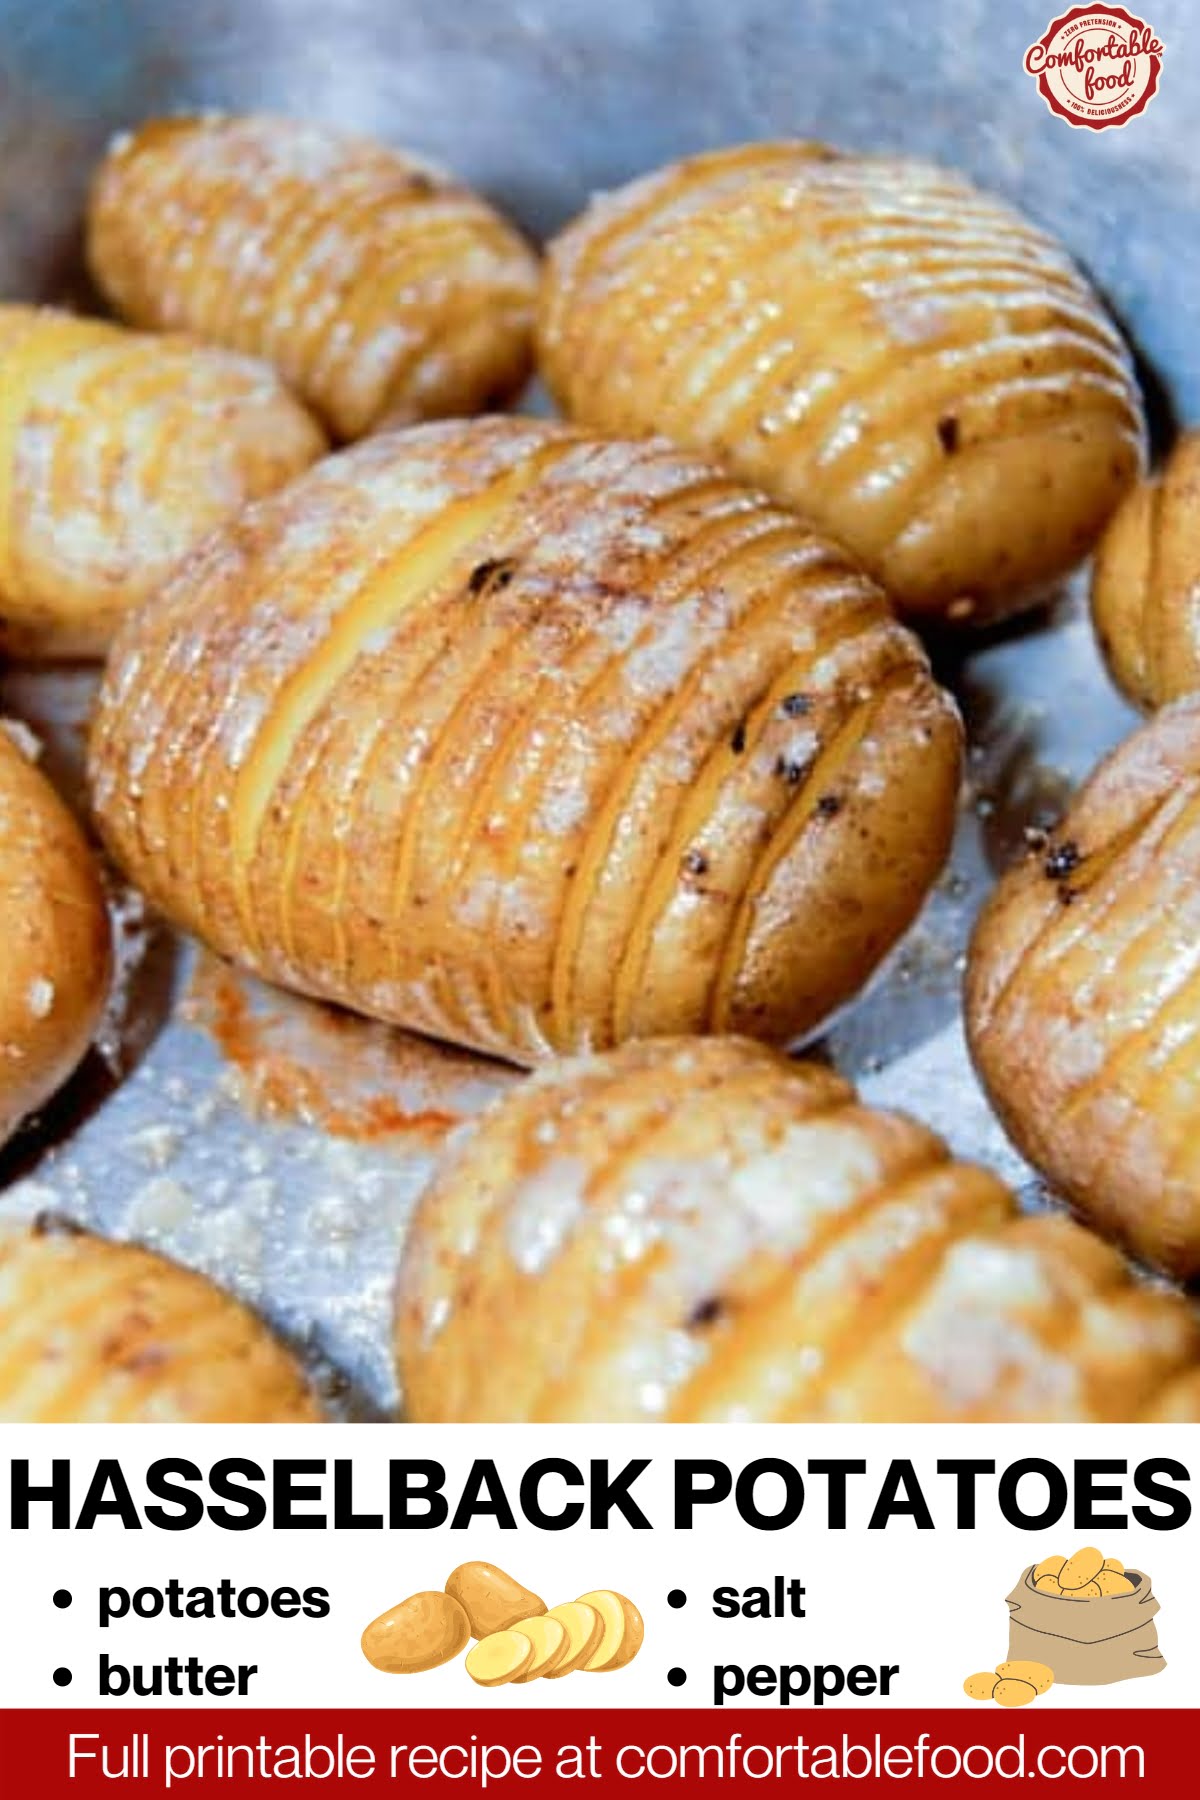 Hasselback potatoes socials